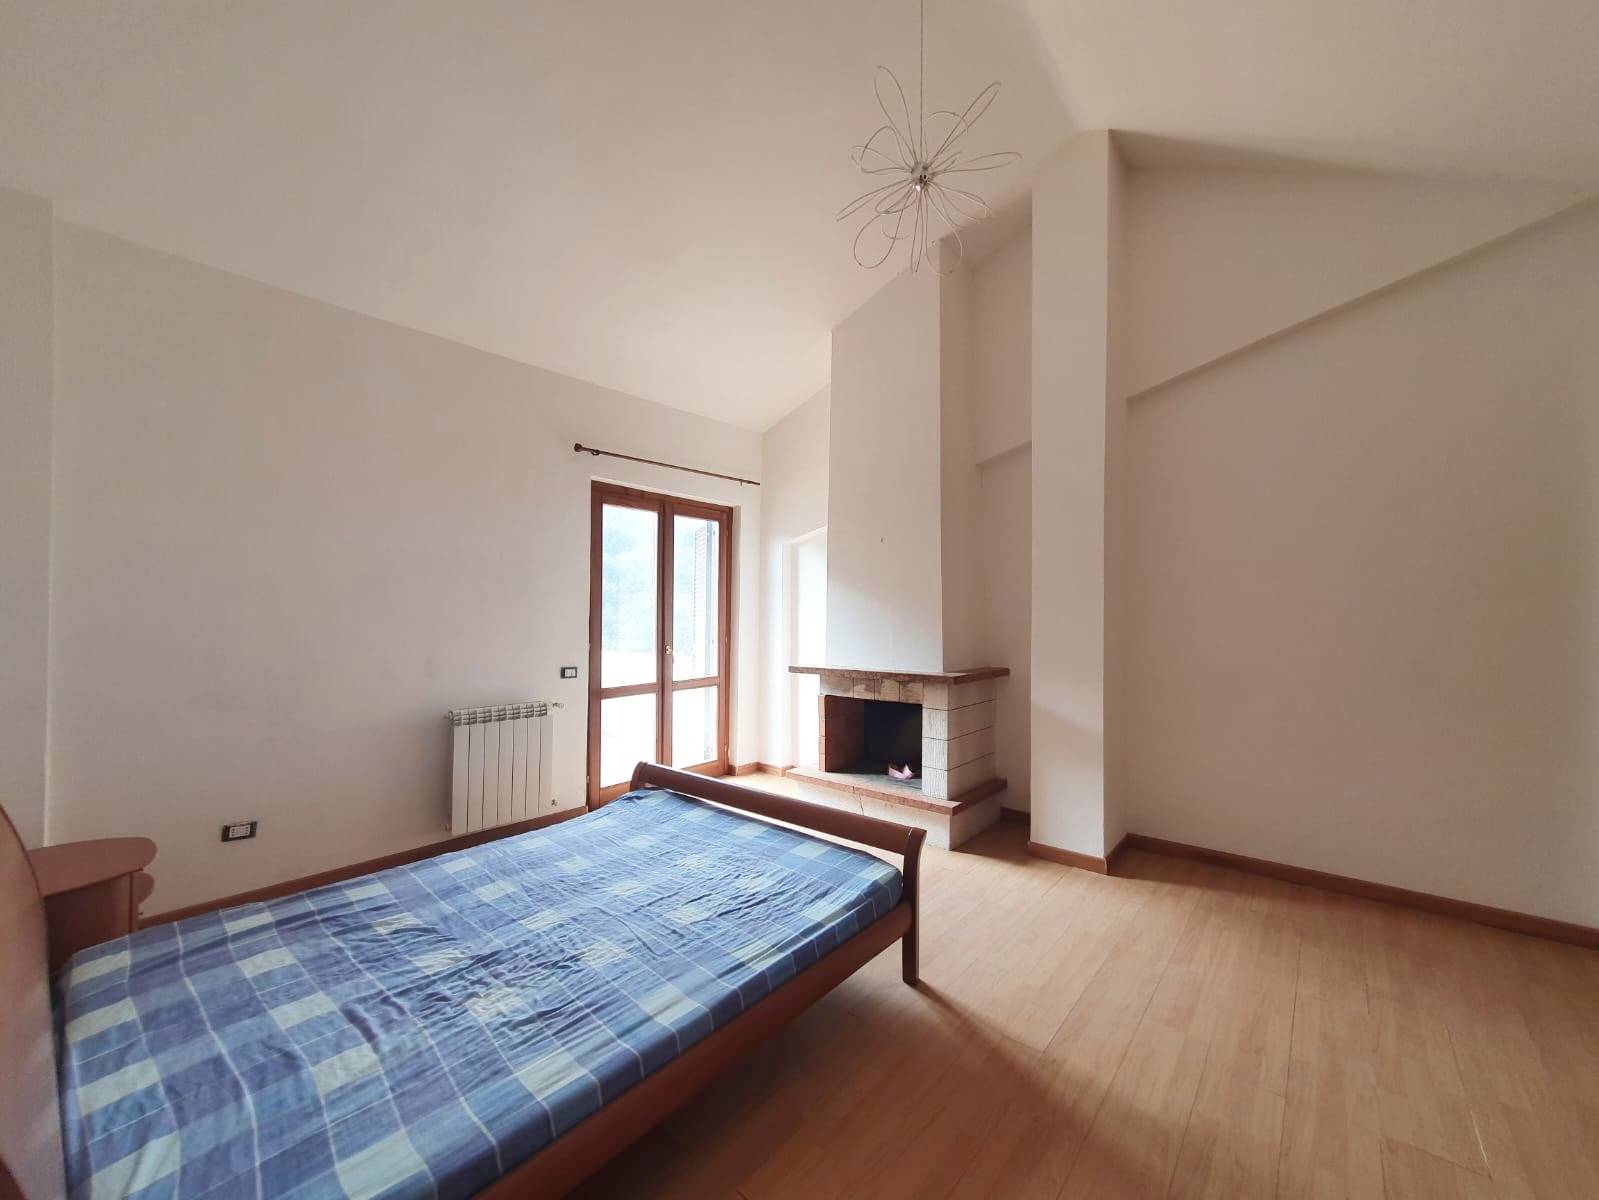 Appartamento in vendita a Scandriglia, 3 locali, zona Località: POGGIO CORESE, prezzo € 49.000 | PortaleAgenzieImmobiliari.it